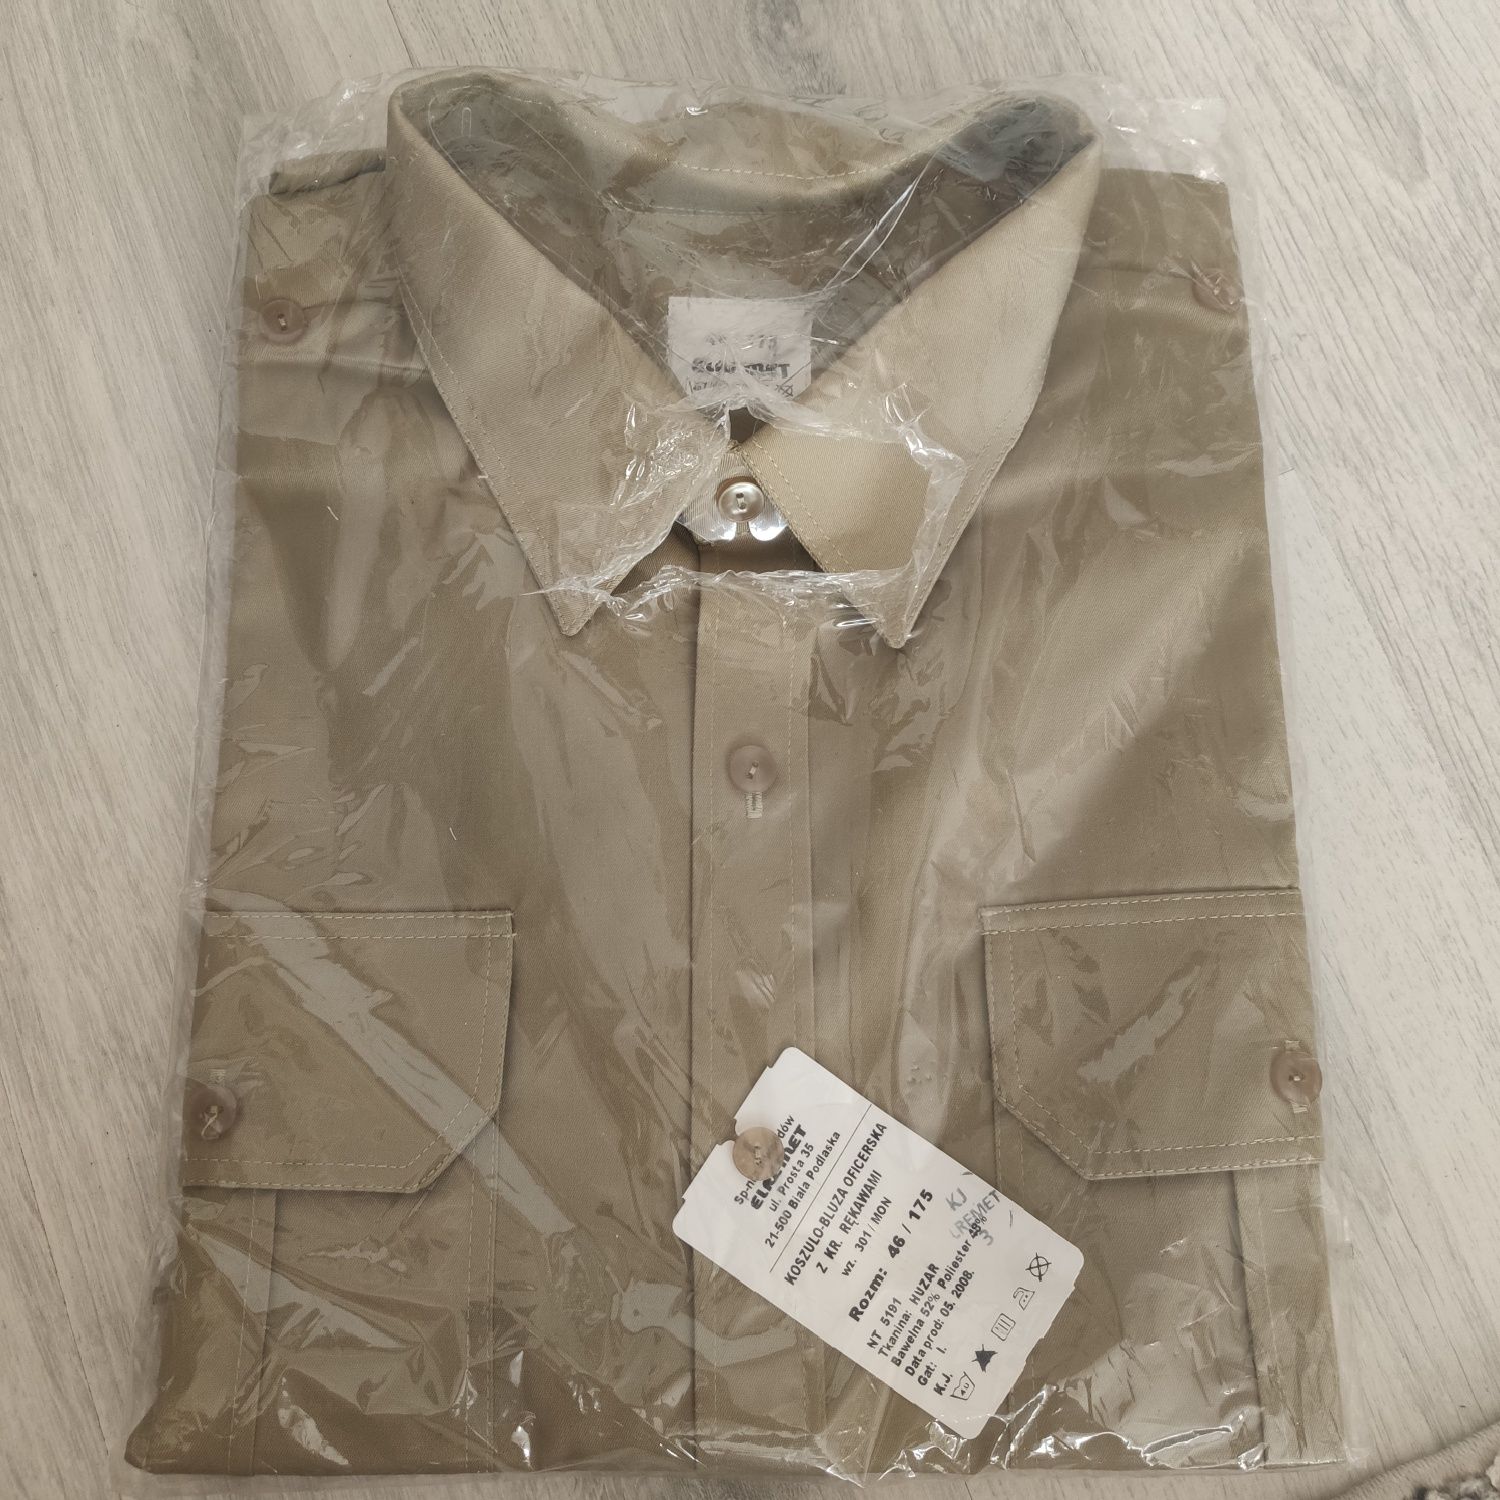 Koszulo-bluza oficerska z krótkimi rękawami wz301/mon